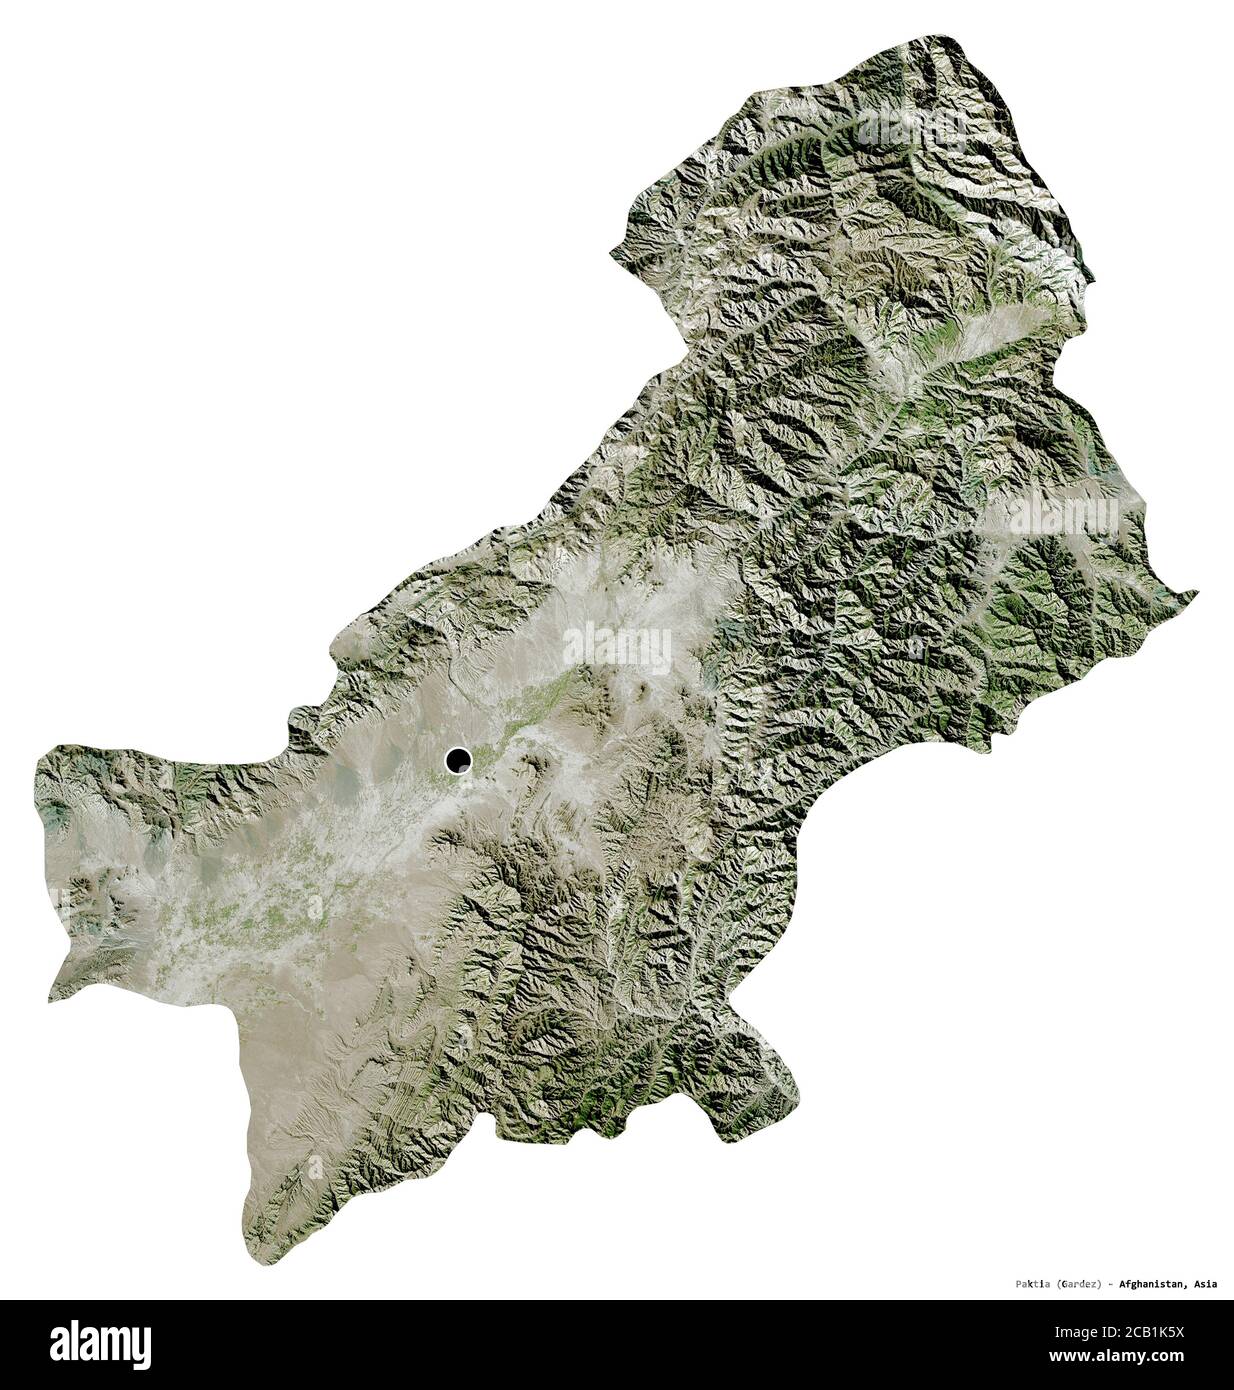 Forma di Paktia, provincia dell'Afghanistan, con la sua capitale isolata su sfondo bianco. Immagini satellitari. Rendering 3D Foto Stock